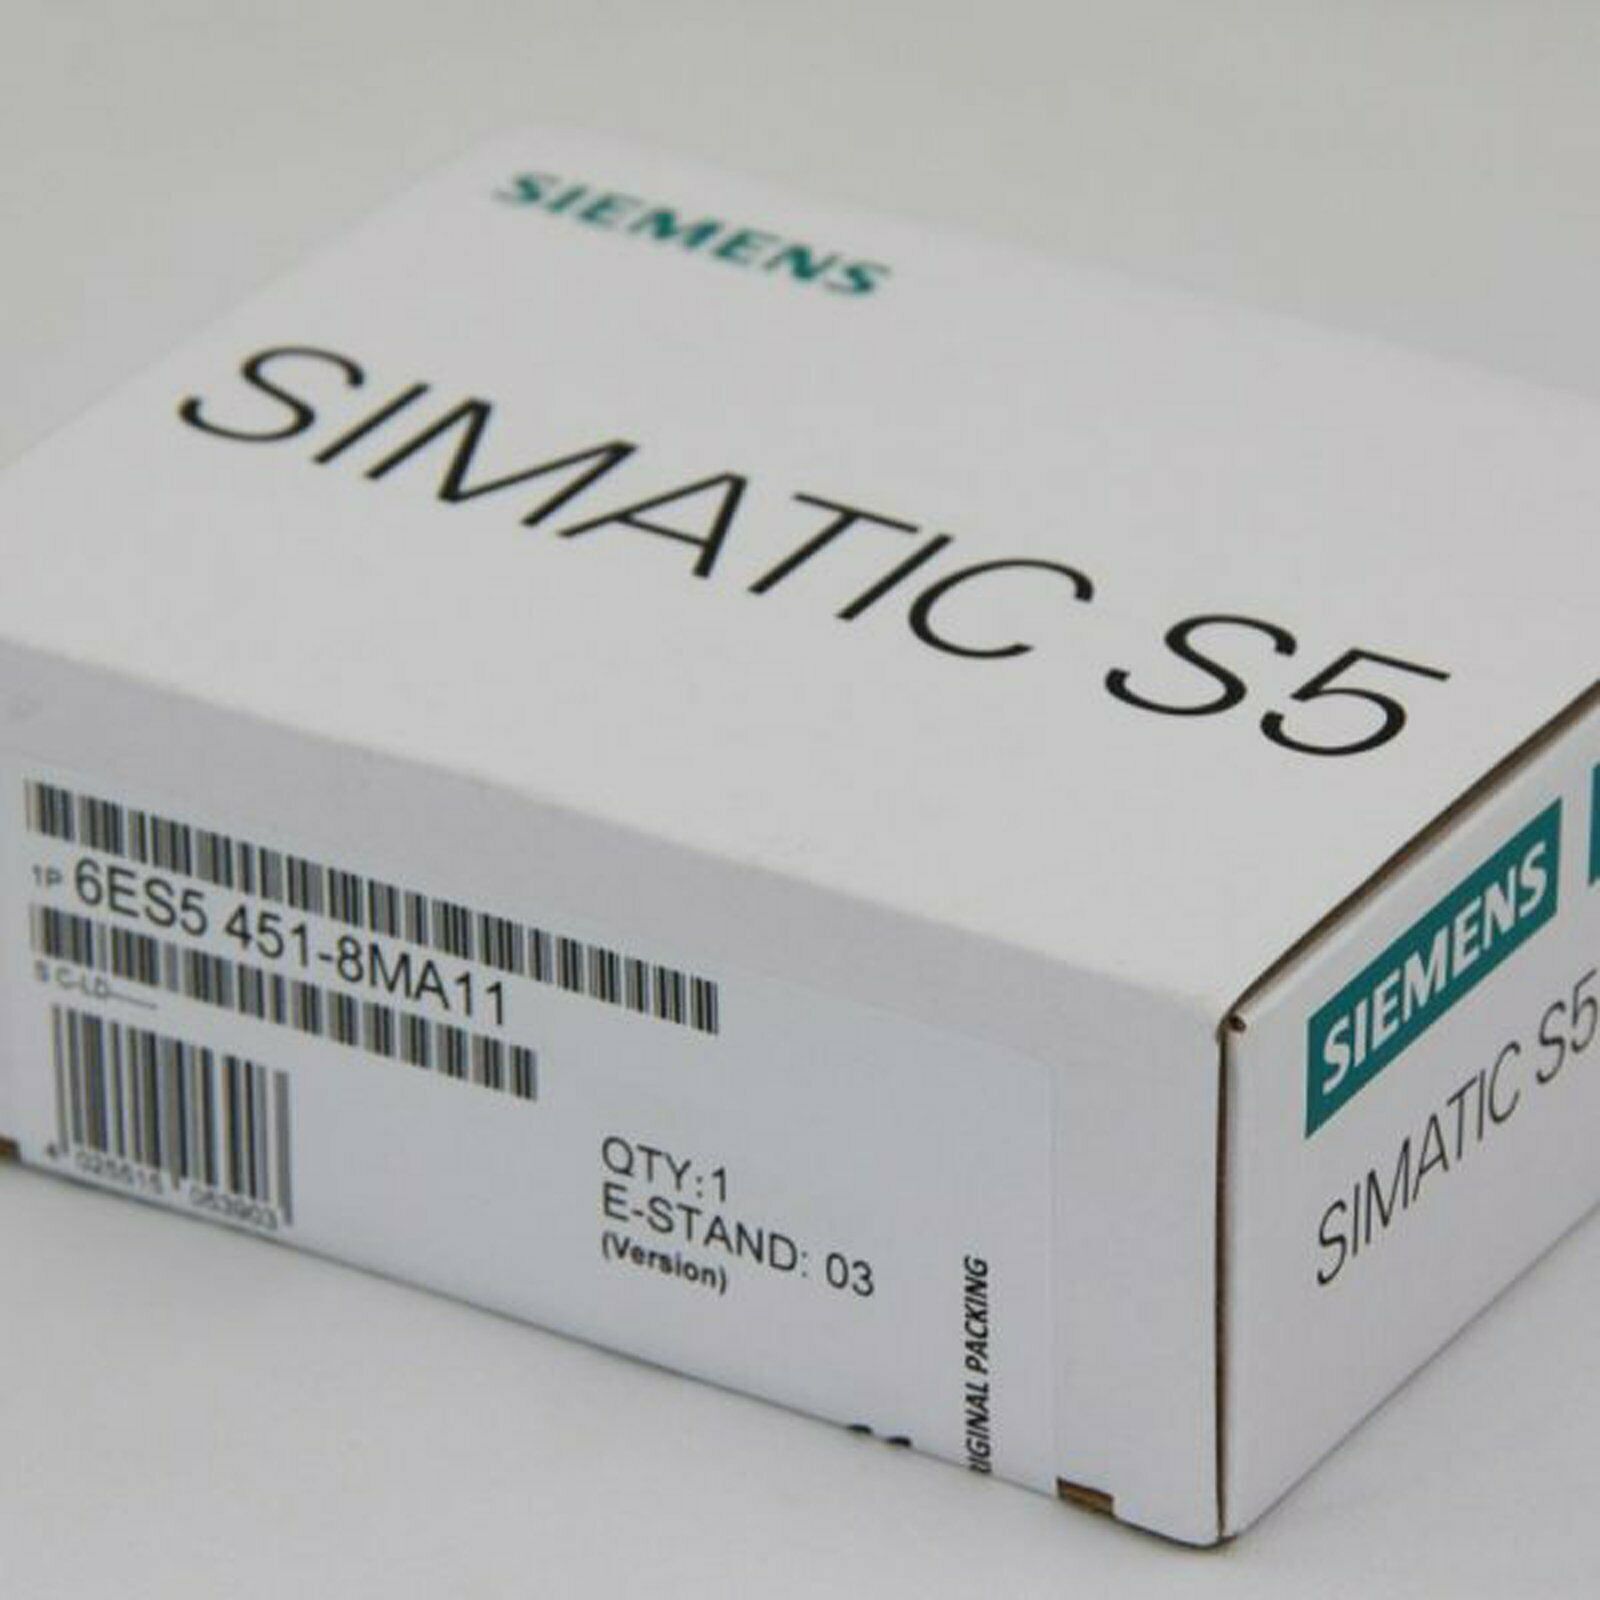 new ONE  In Box Siemens 6ES5451-8MA11 6ES5 451-8MA11 One year